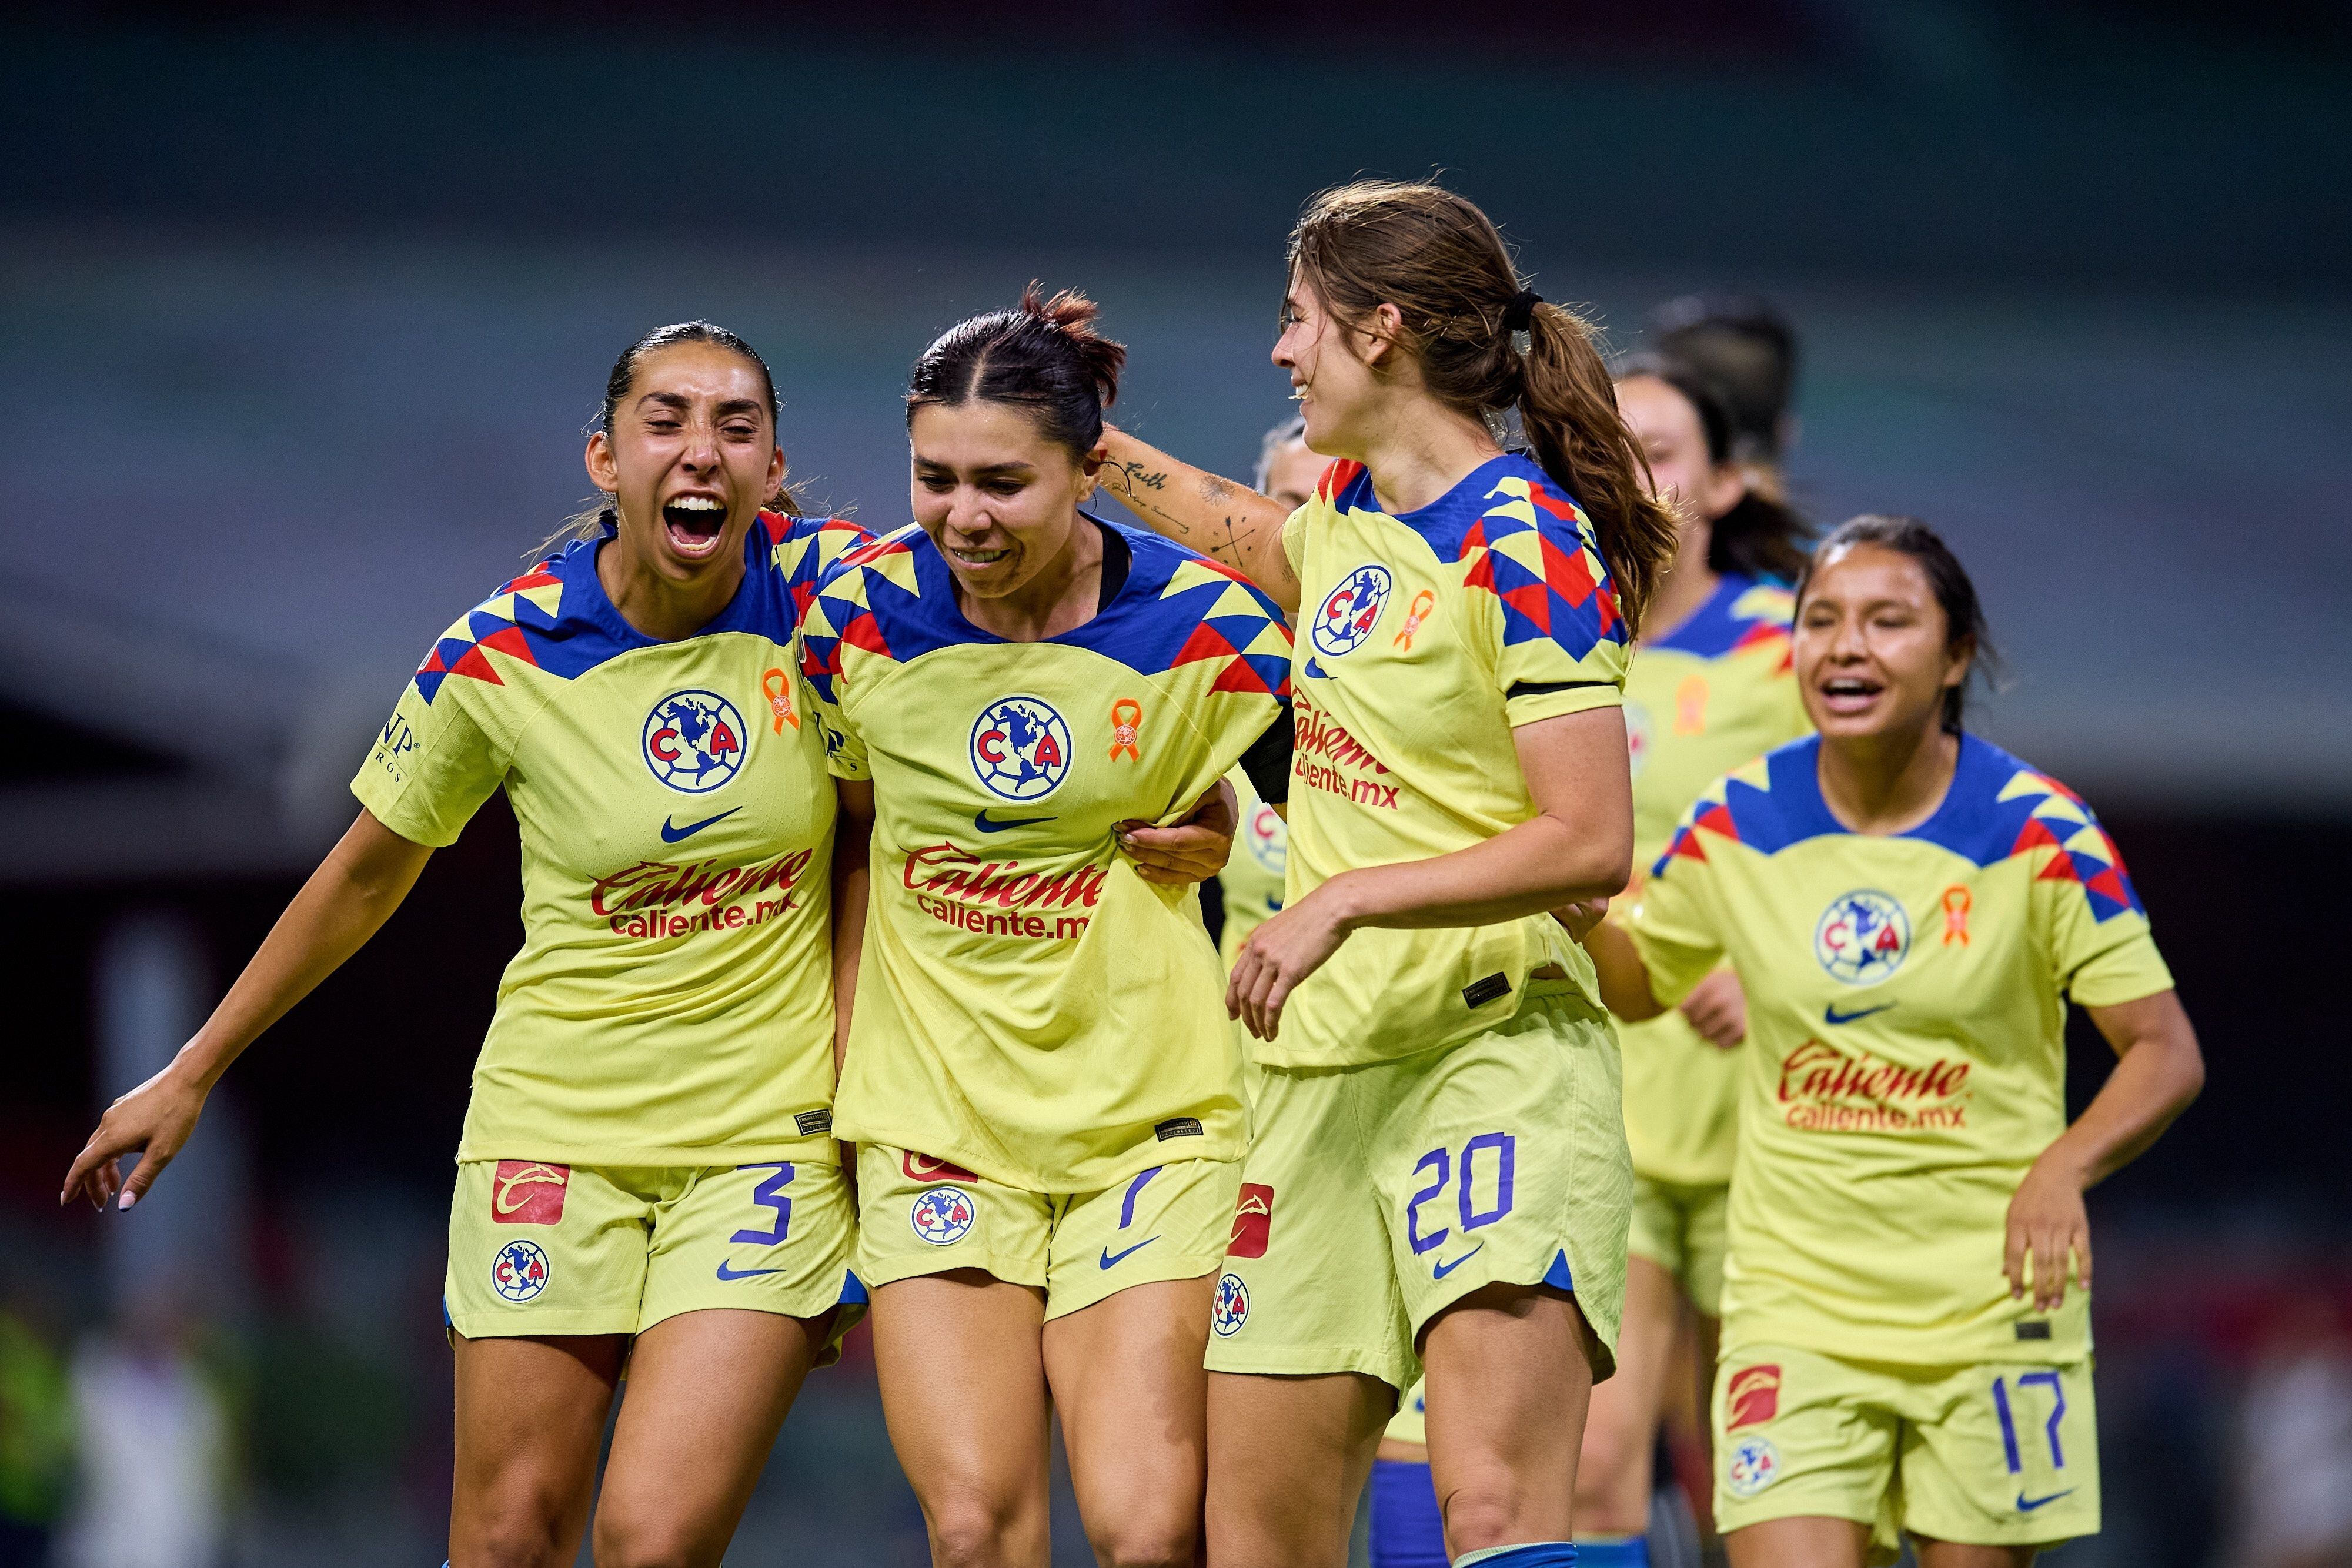 El club América femenil no tiene los patrocinadores que el equipo varonil. (Foto: Mexsport).